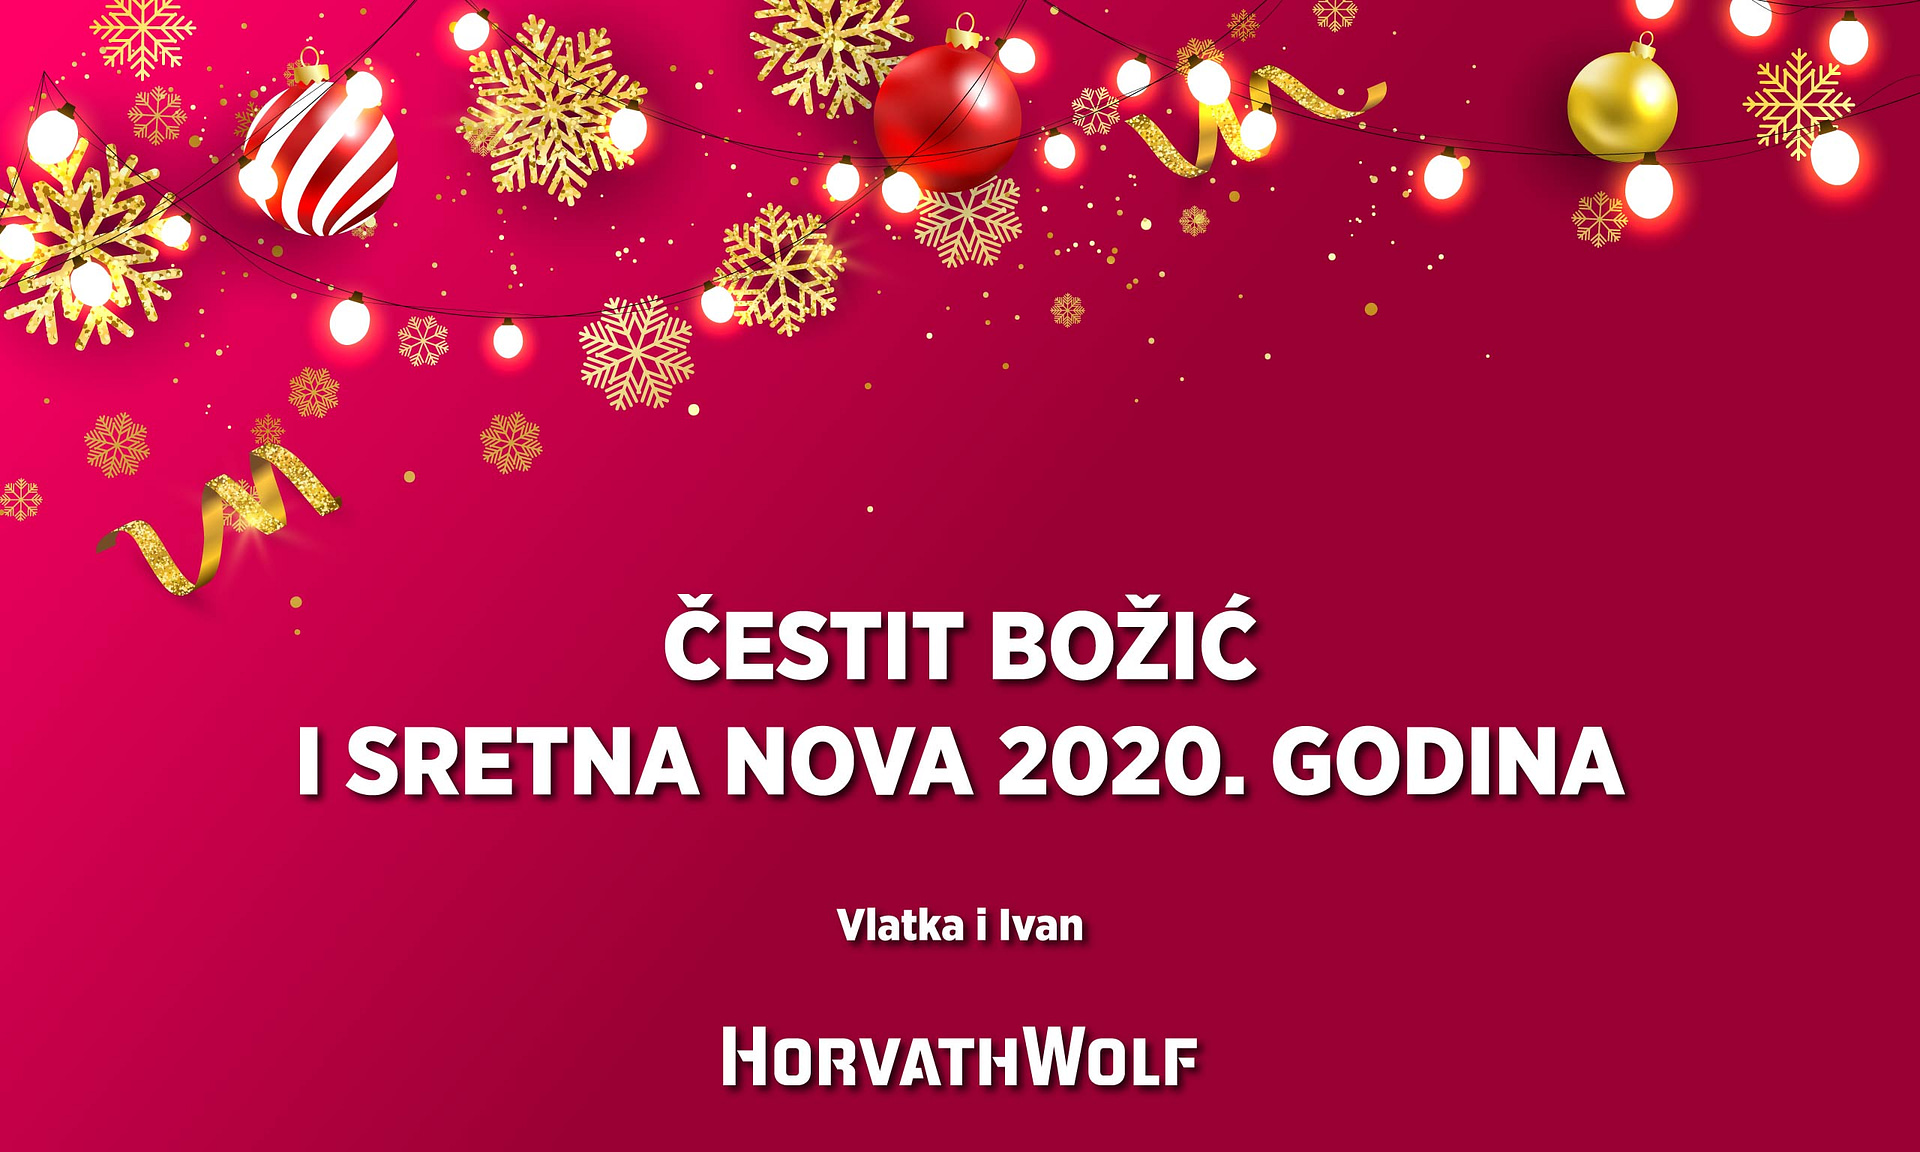 Čestit Božić i sretna nova 2020. godina by Vlatka i Ivan (Horvath Wolf)